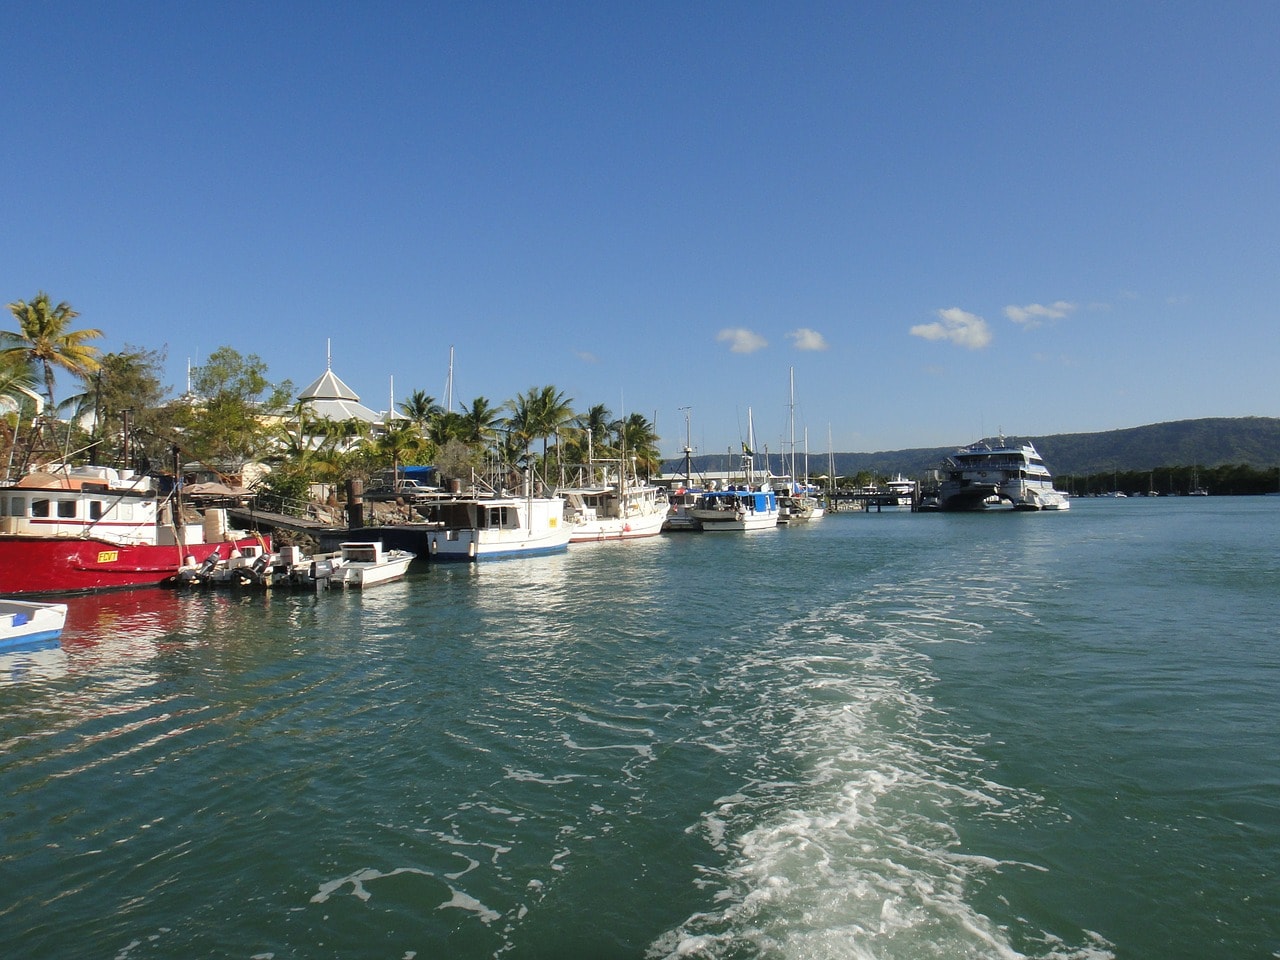 Port Douglas in North Queensland